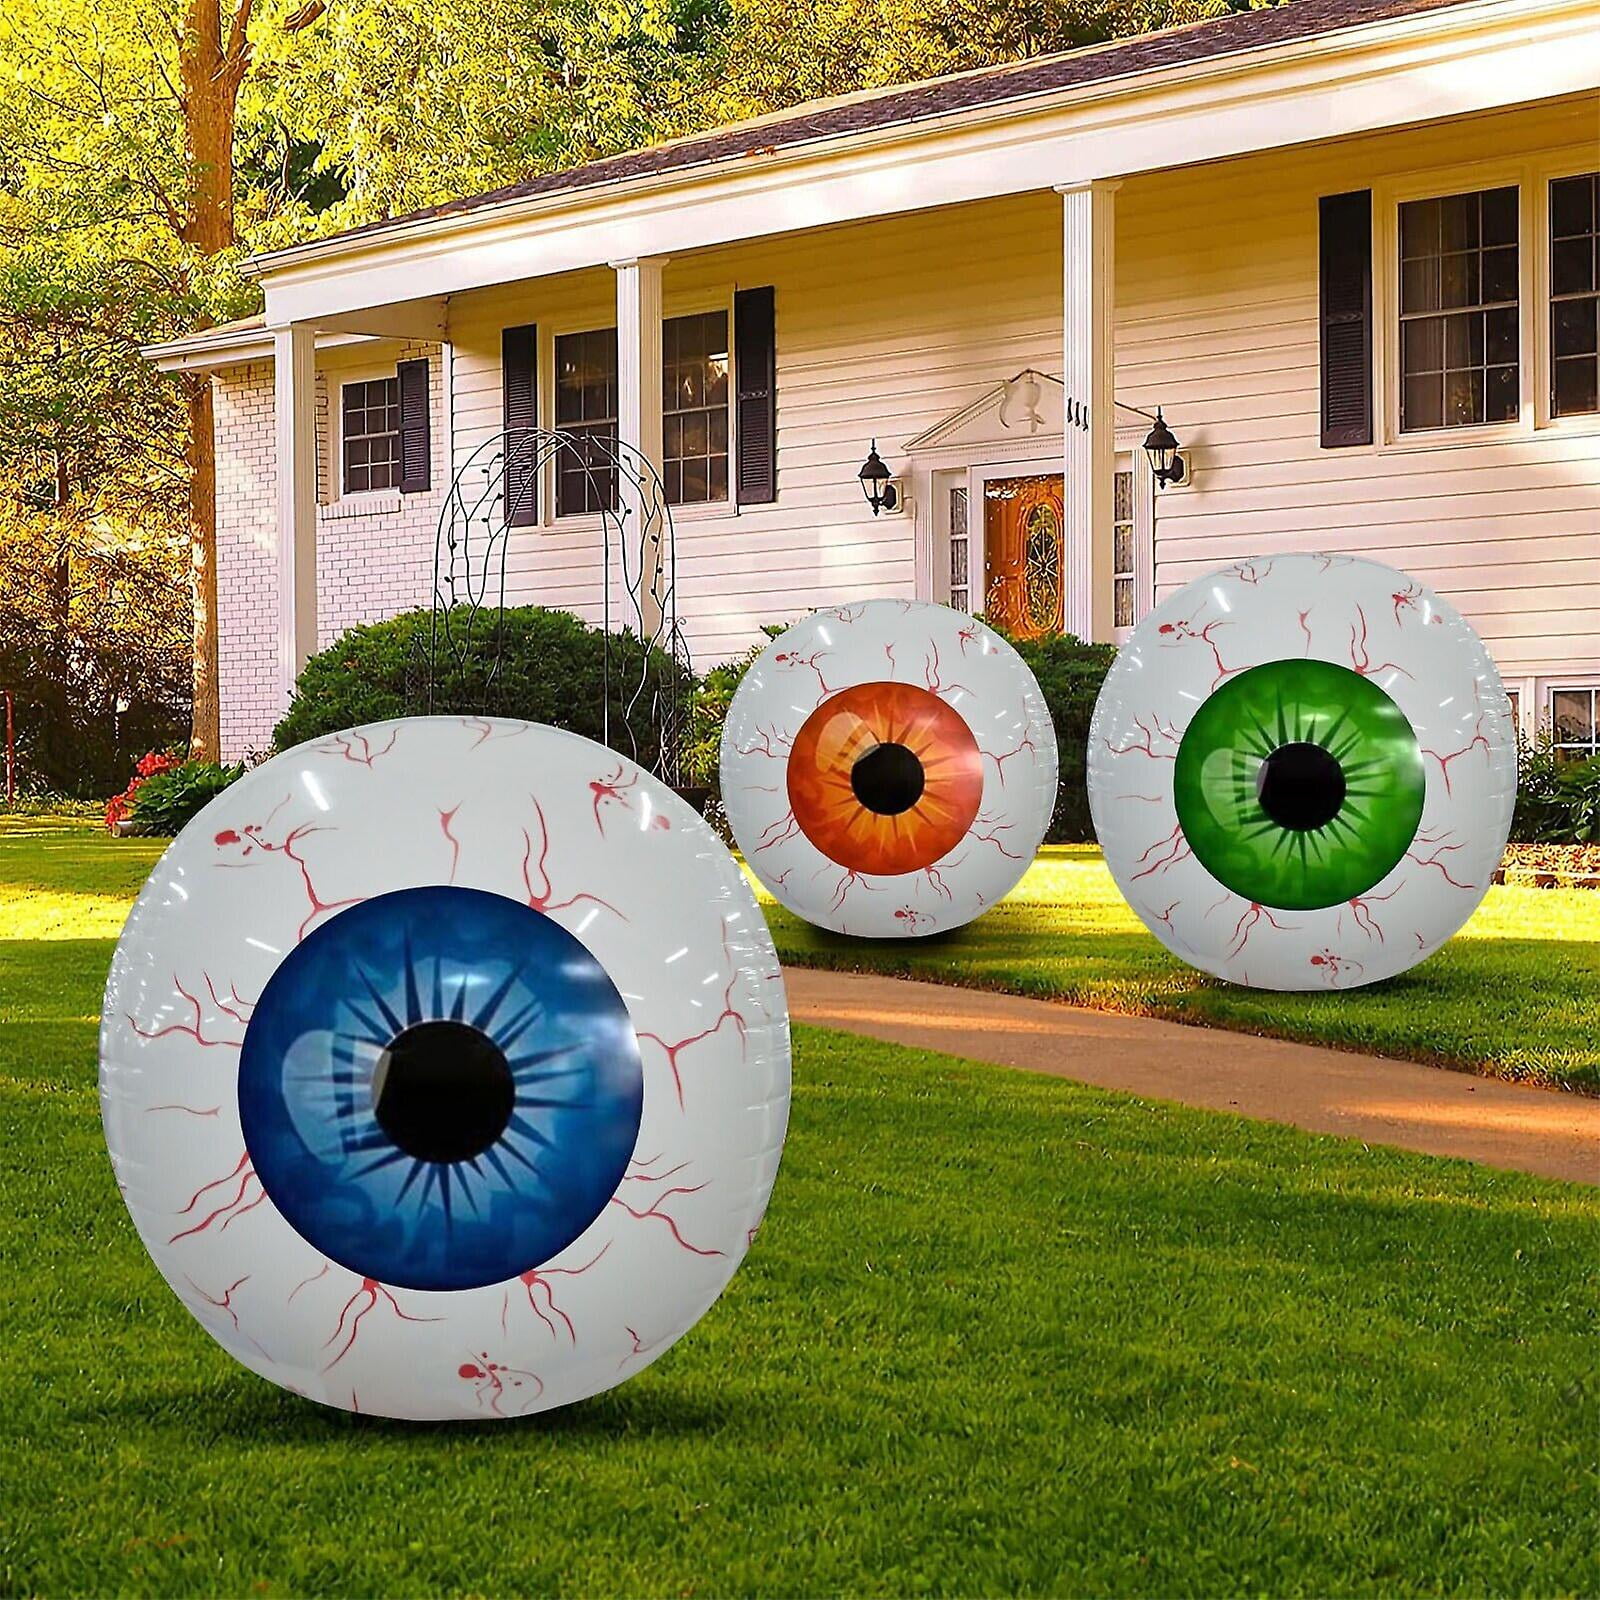 DIY Easy Realistic Eyeballs for Halloween - A Crafty Mix